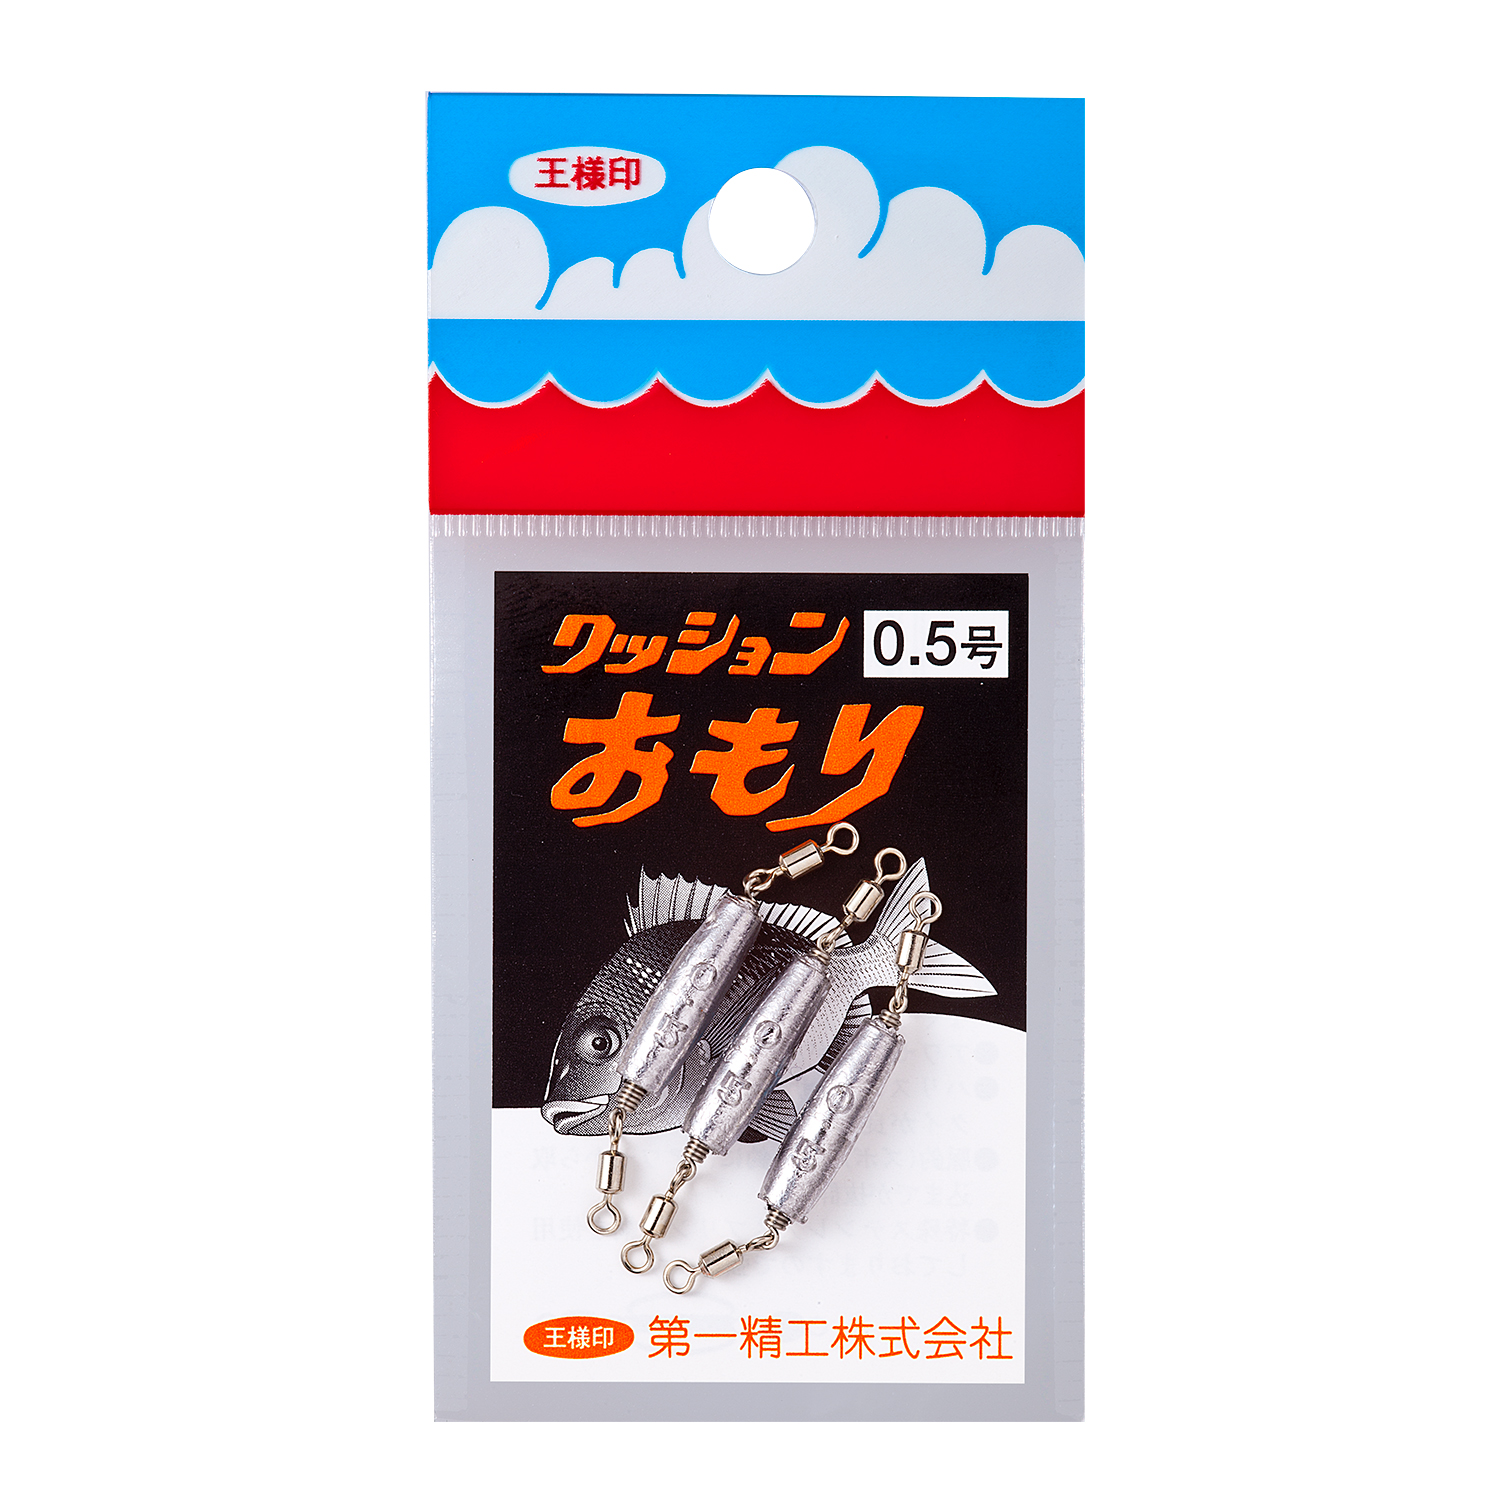 商品詳細 第一精工株式会社 Daiichiseiko Co Ltd 釣具 より良い確かな釣用品